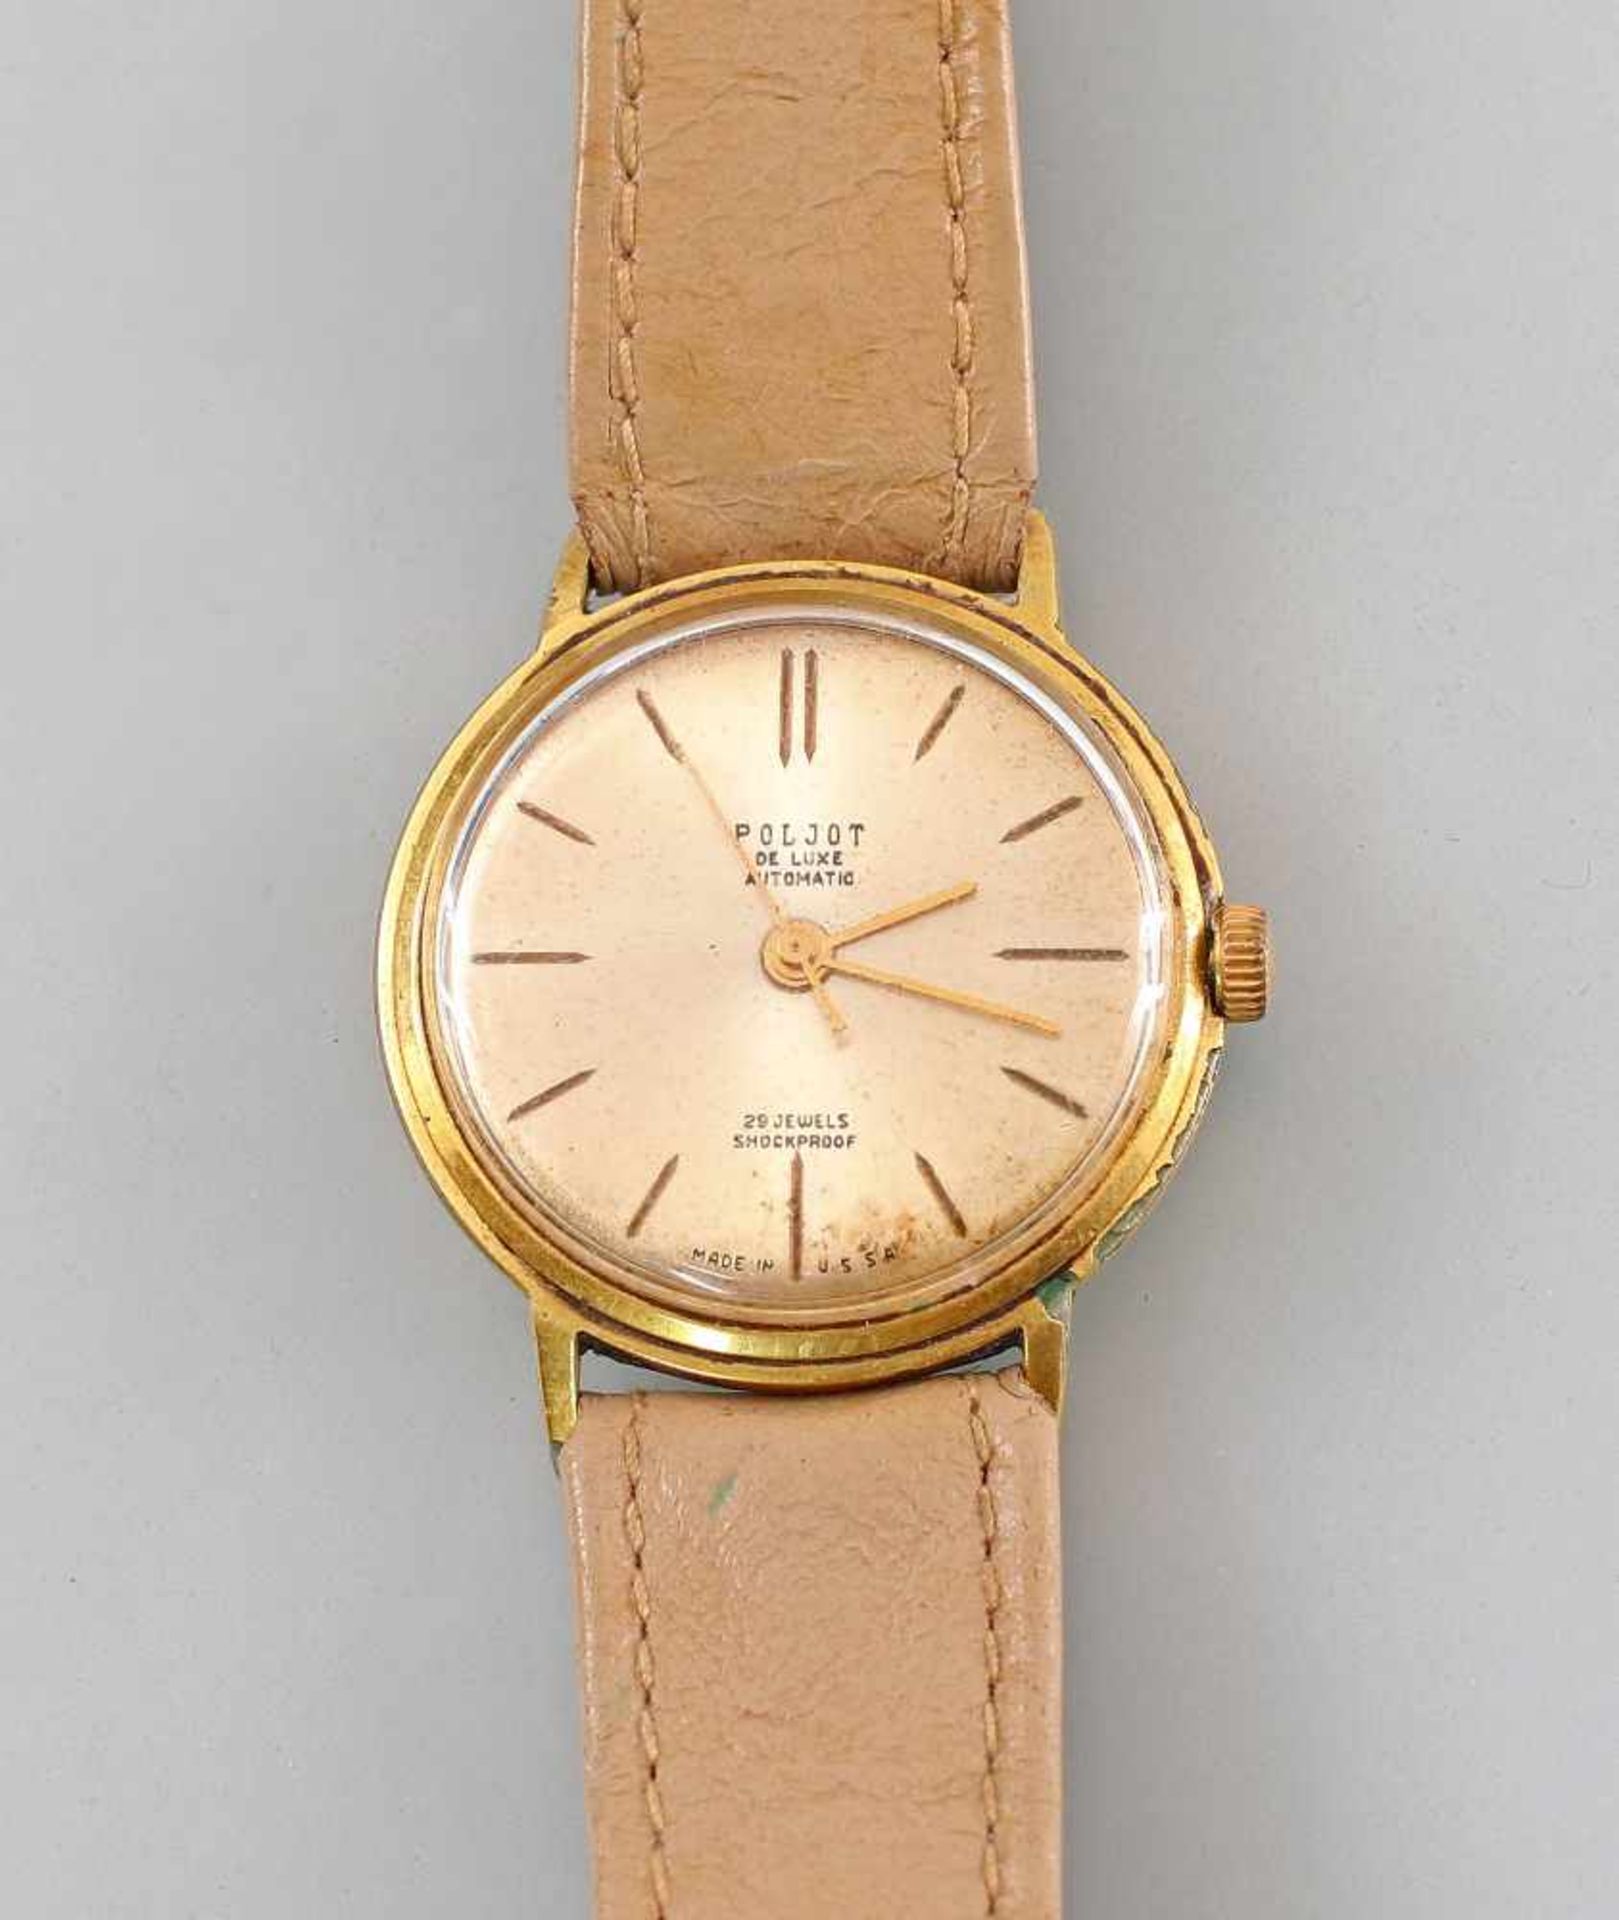 Vintage Armbanduhr Poljot de Luxe AutomaticUSSR, 70er Jahre, Automatic-Werk mit 29 Steinen (